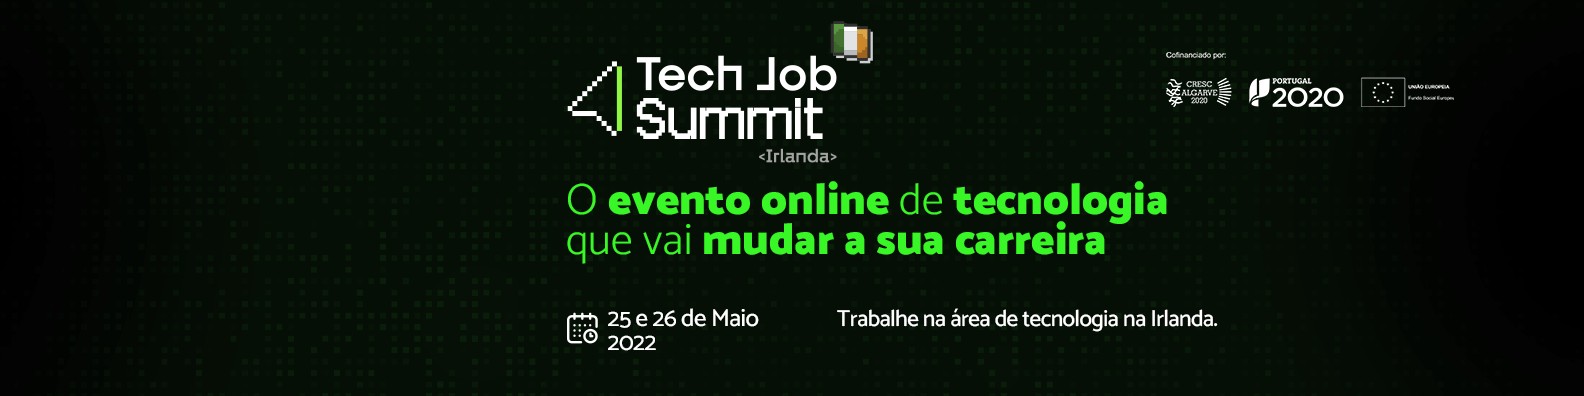 Tech Job Summit | LinkedIn